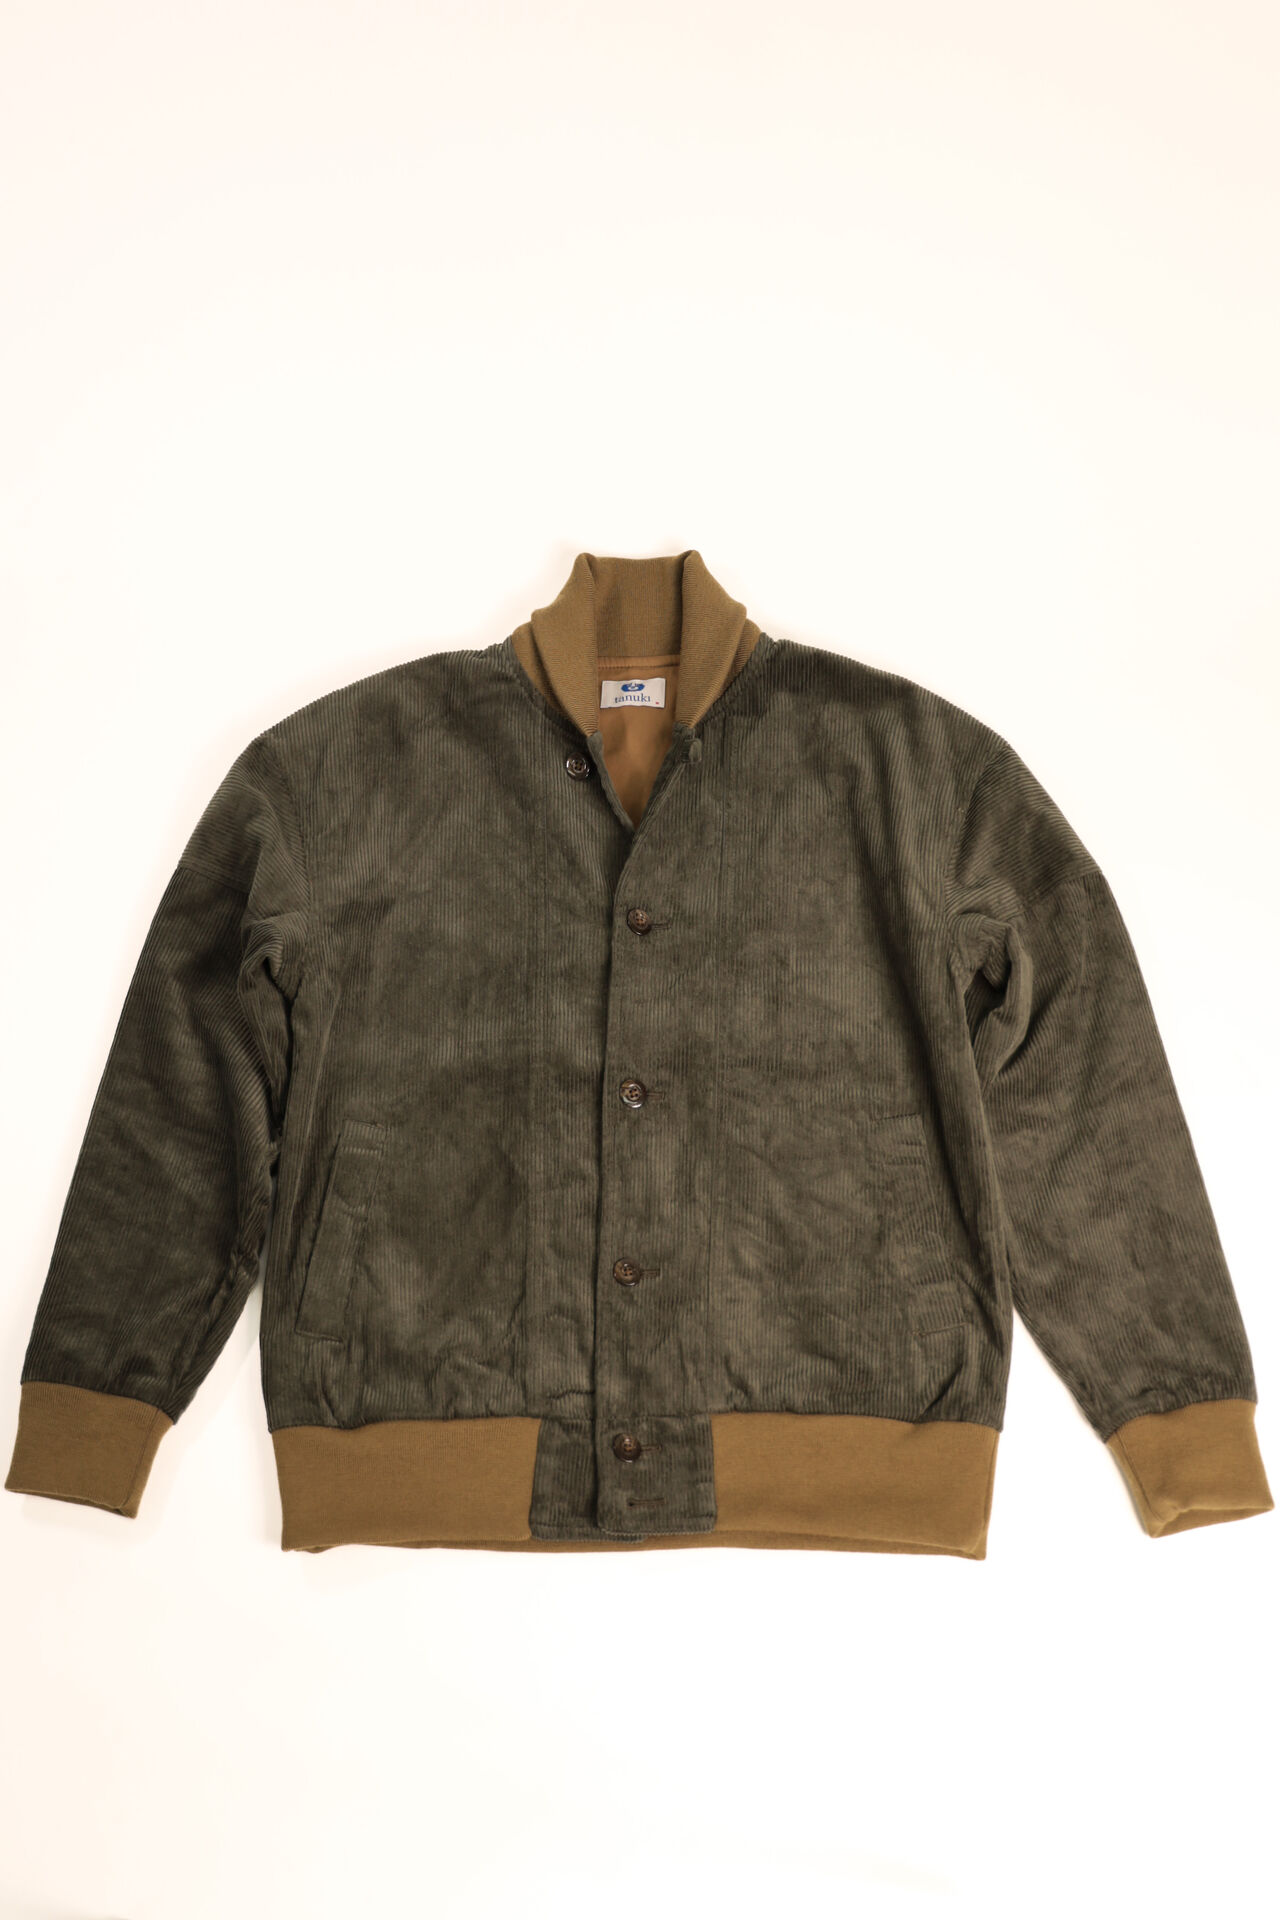 TNK501SZA "Sazanami" Corduroy Jacket (Olive),, large image number 11